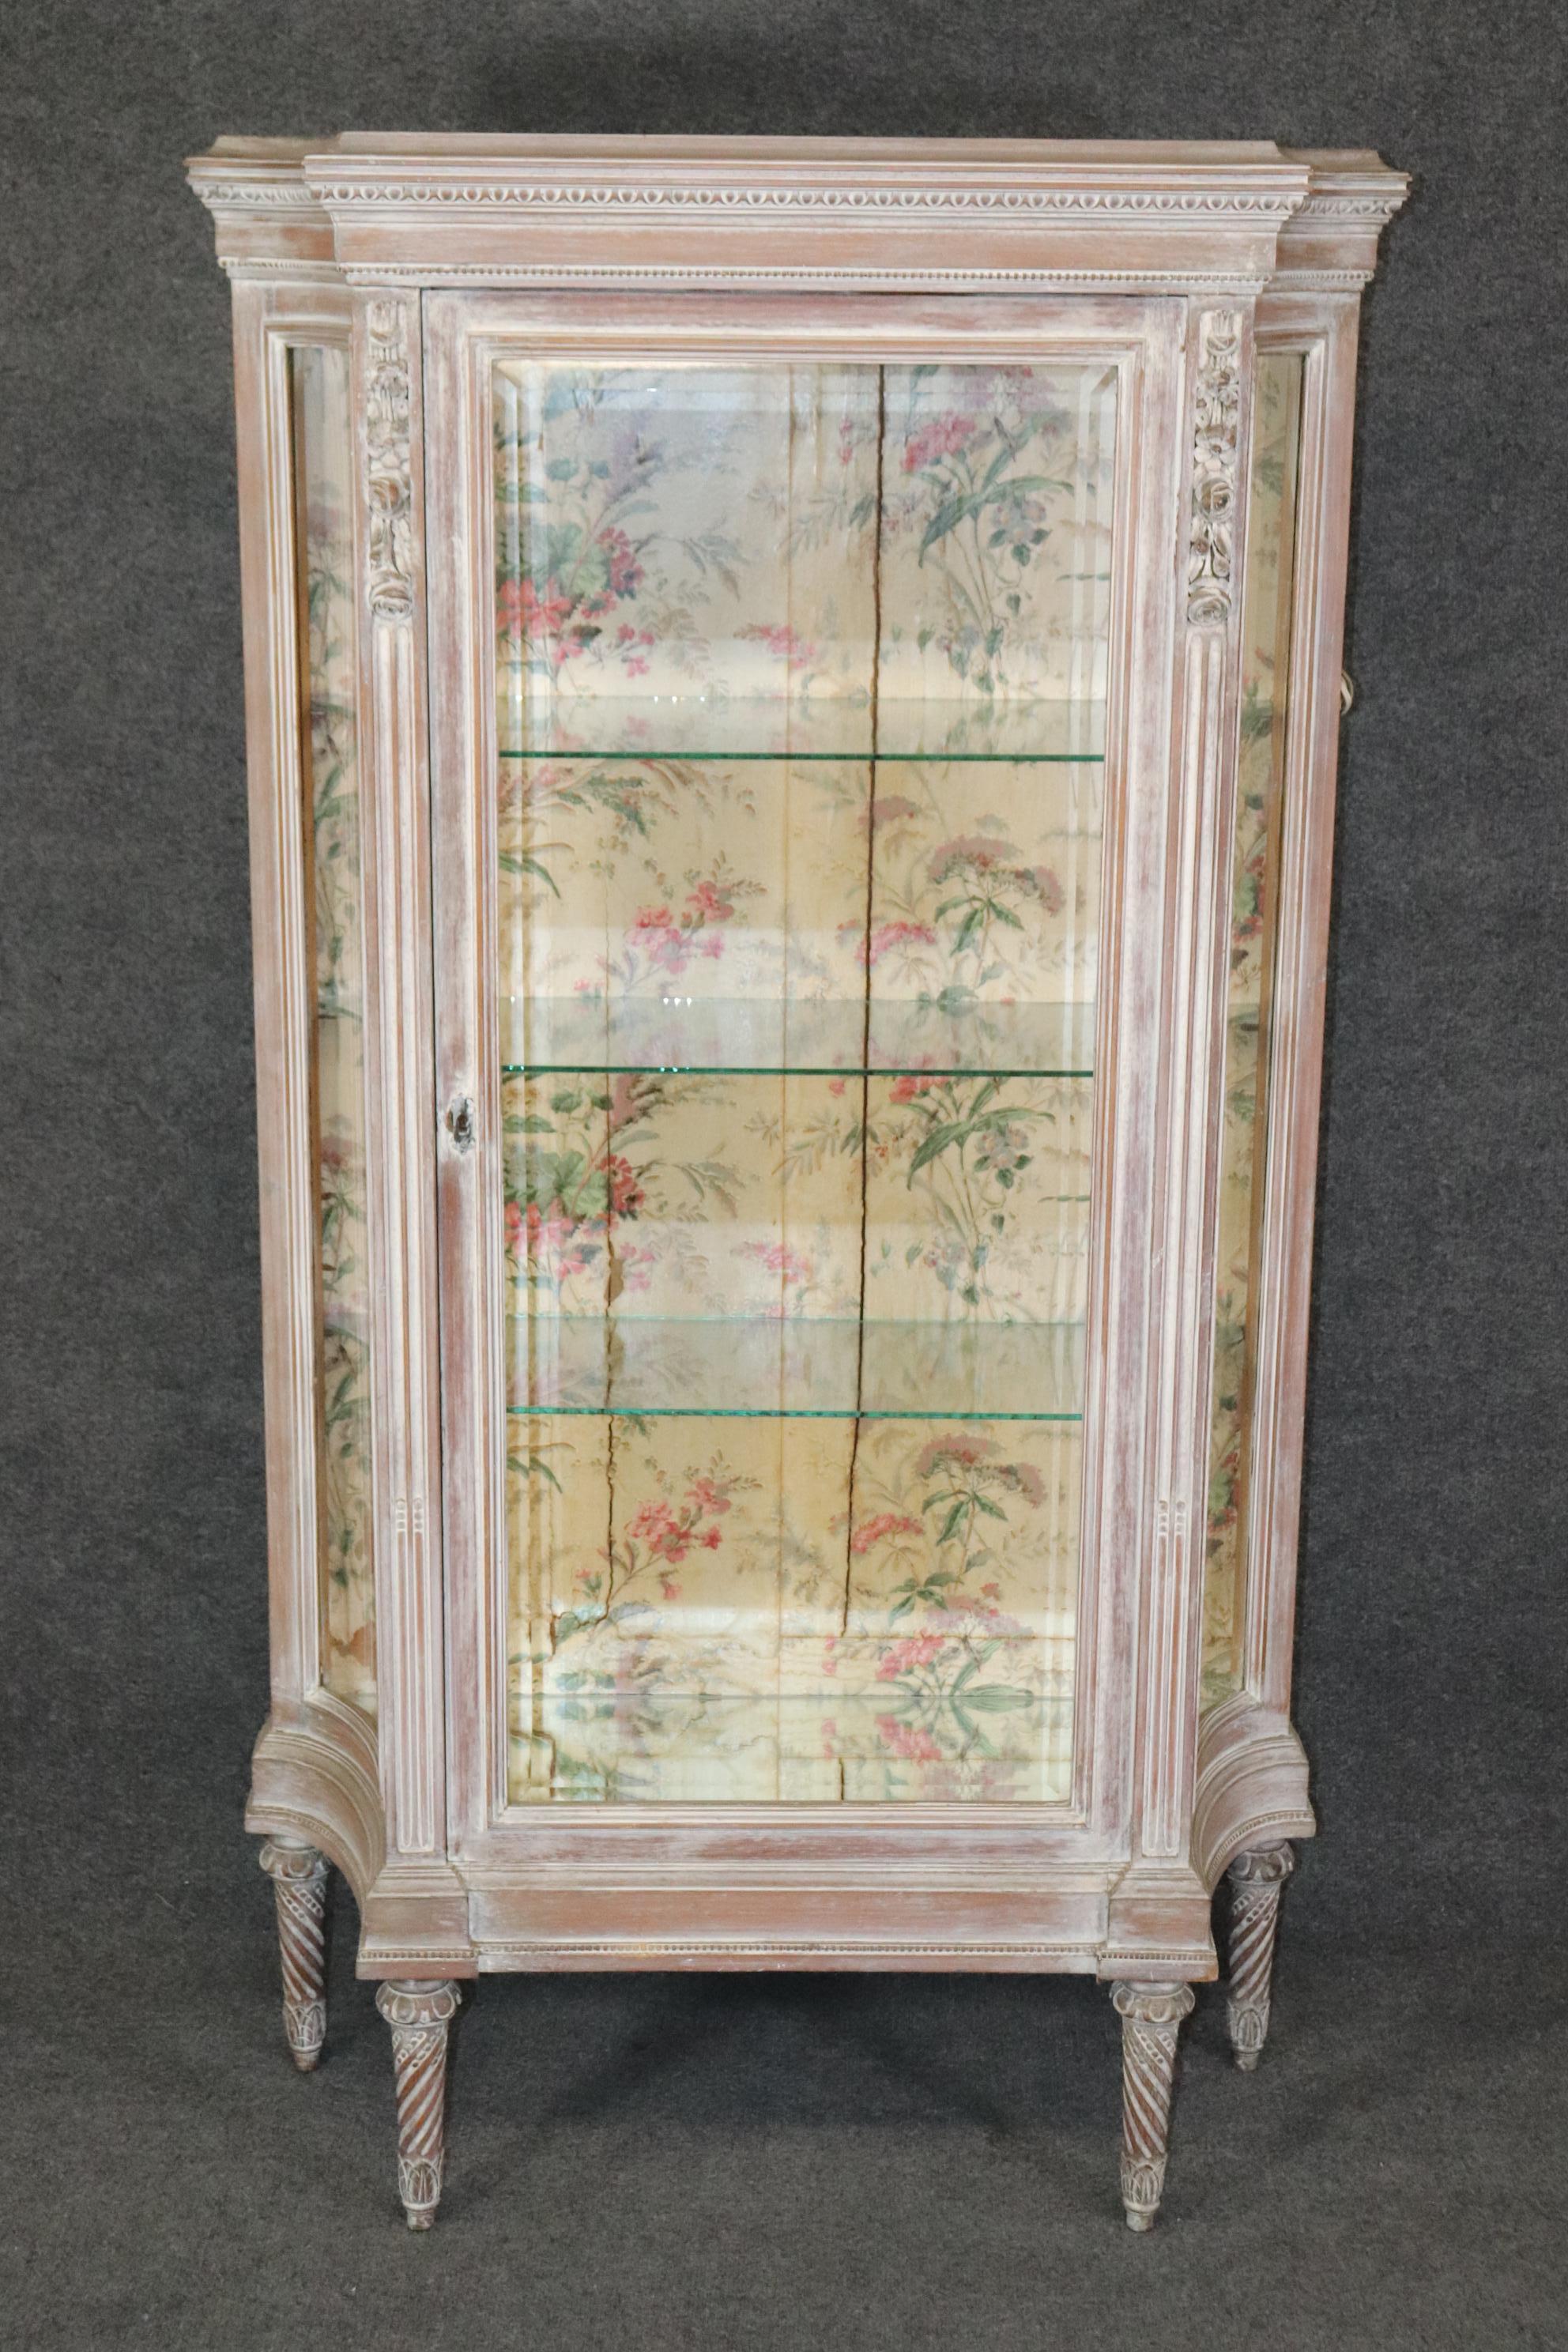 Dimensions- H : 66 3/4in W : 38in D : 13 3/4in 
 Ce cabinet de curiosités ancien de style Louis XVI est fait de la plus haute qualité et a une belle finition vieillie. Si vous regardez les photos fournies, vous verrez l'attention portée aux détails